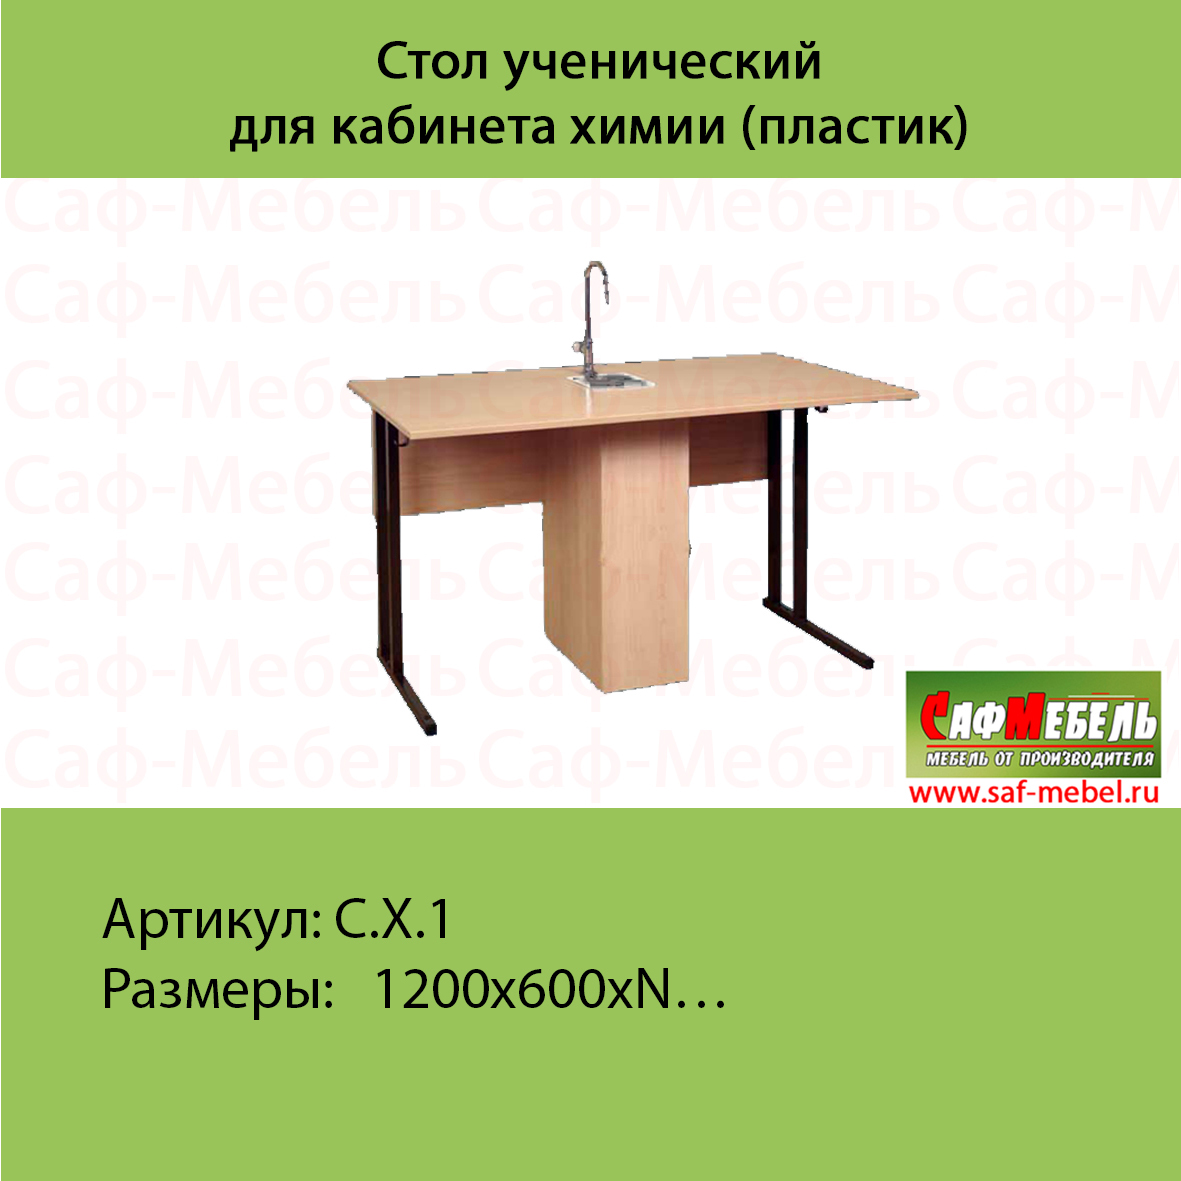 Стол ученический для кабинета химии (пластик) /3 557 руб./